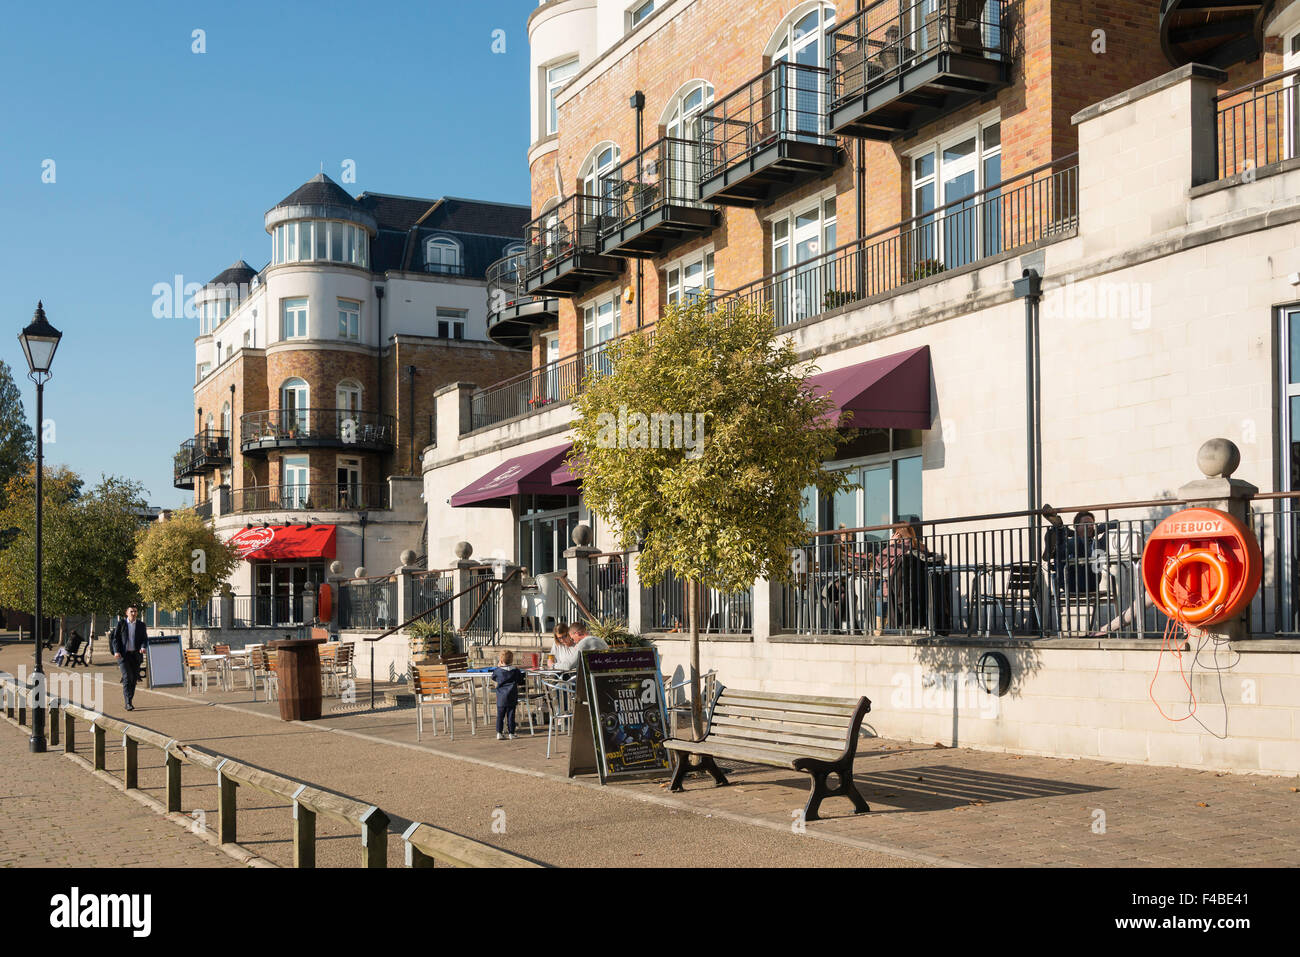 Promenade au bord de la rivière Thames, Edge, Staines-upon-Thames, Surrey, Angleterre, Royaume-Uni Banque D'Images